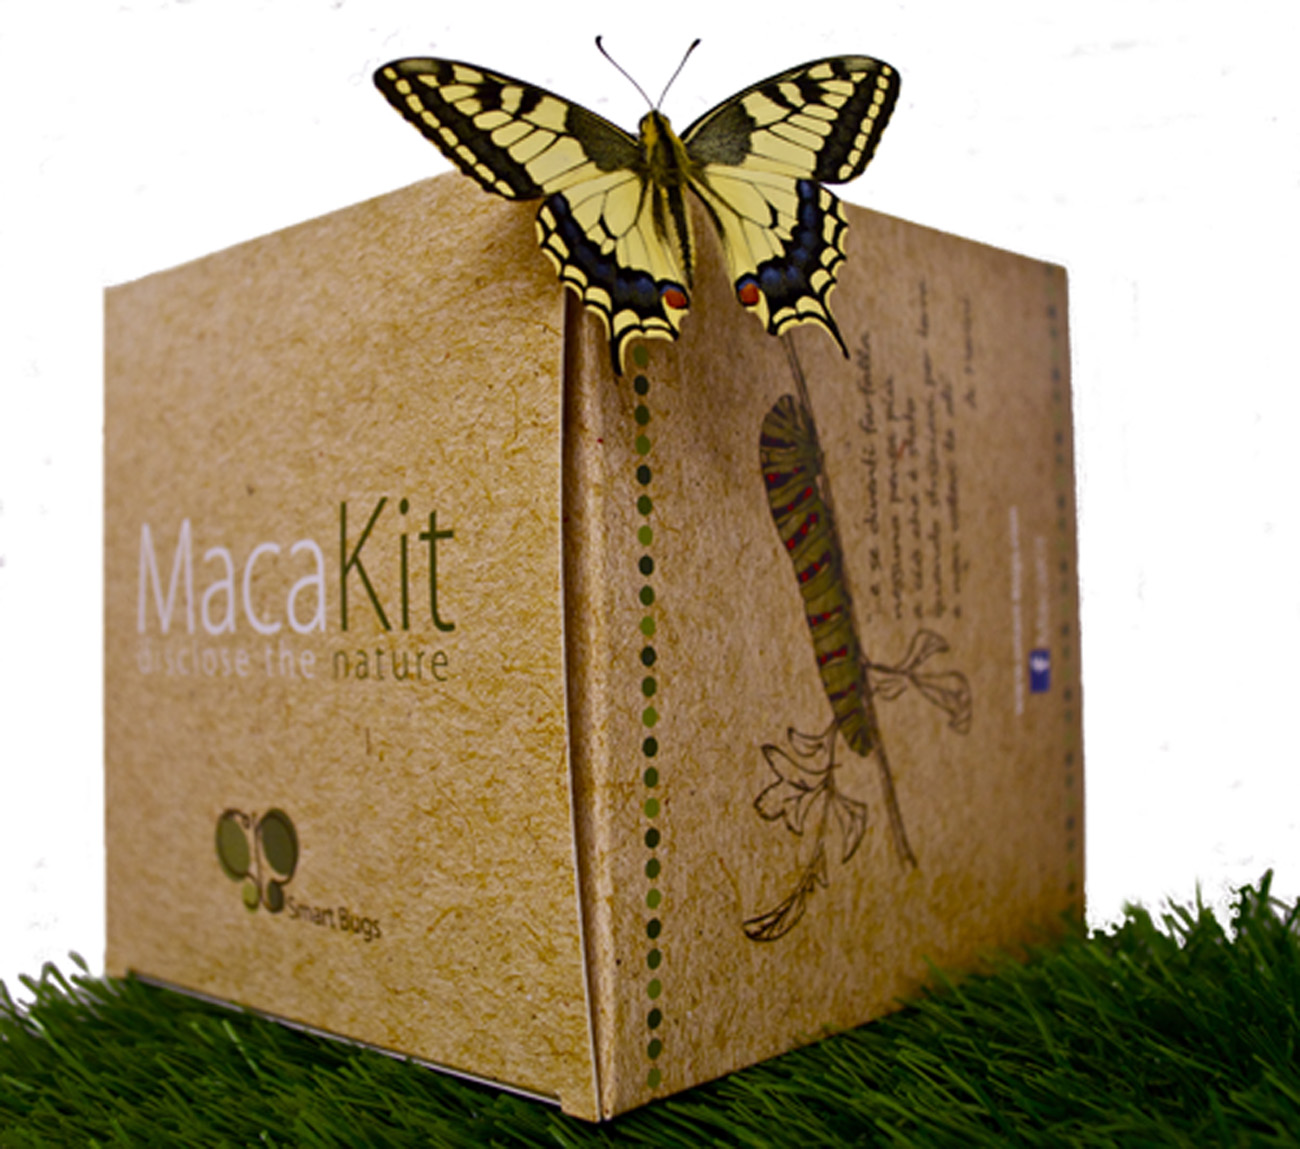 Il cielo sopra San Marco  Smart Bugs, la startup degli insetti che riporta  le farfalle in città